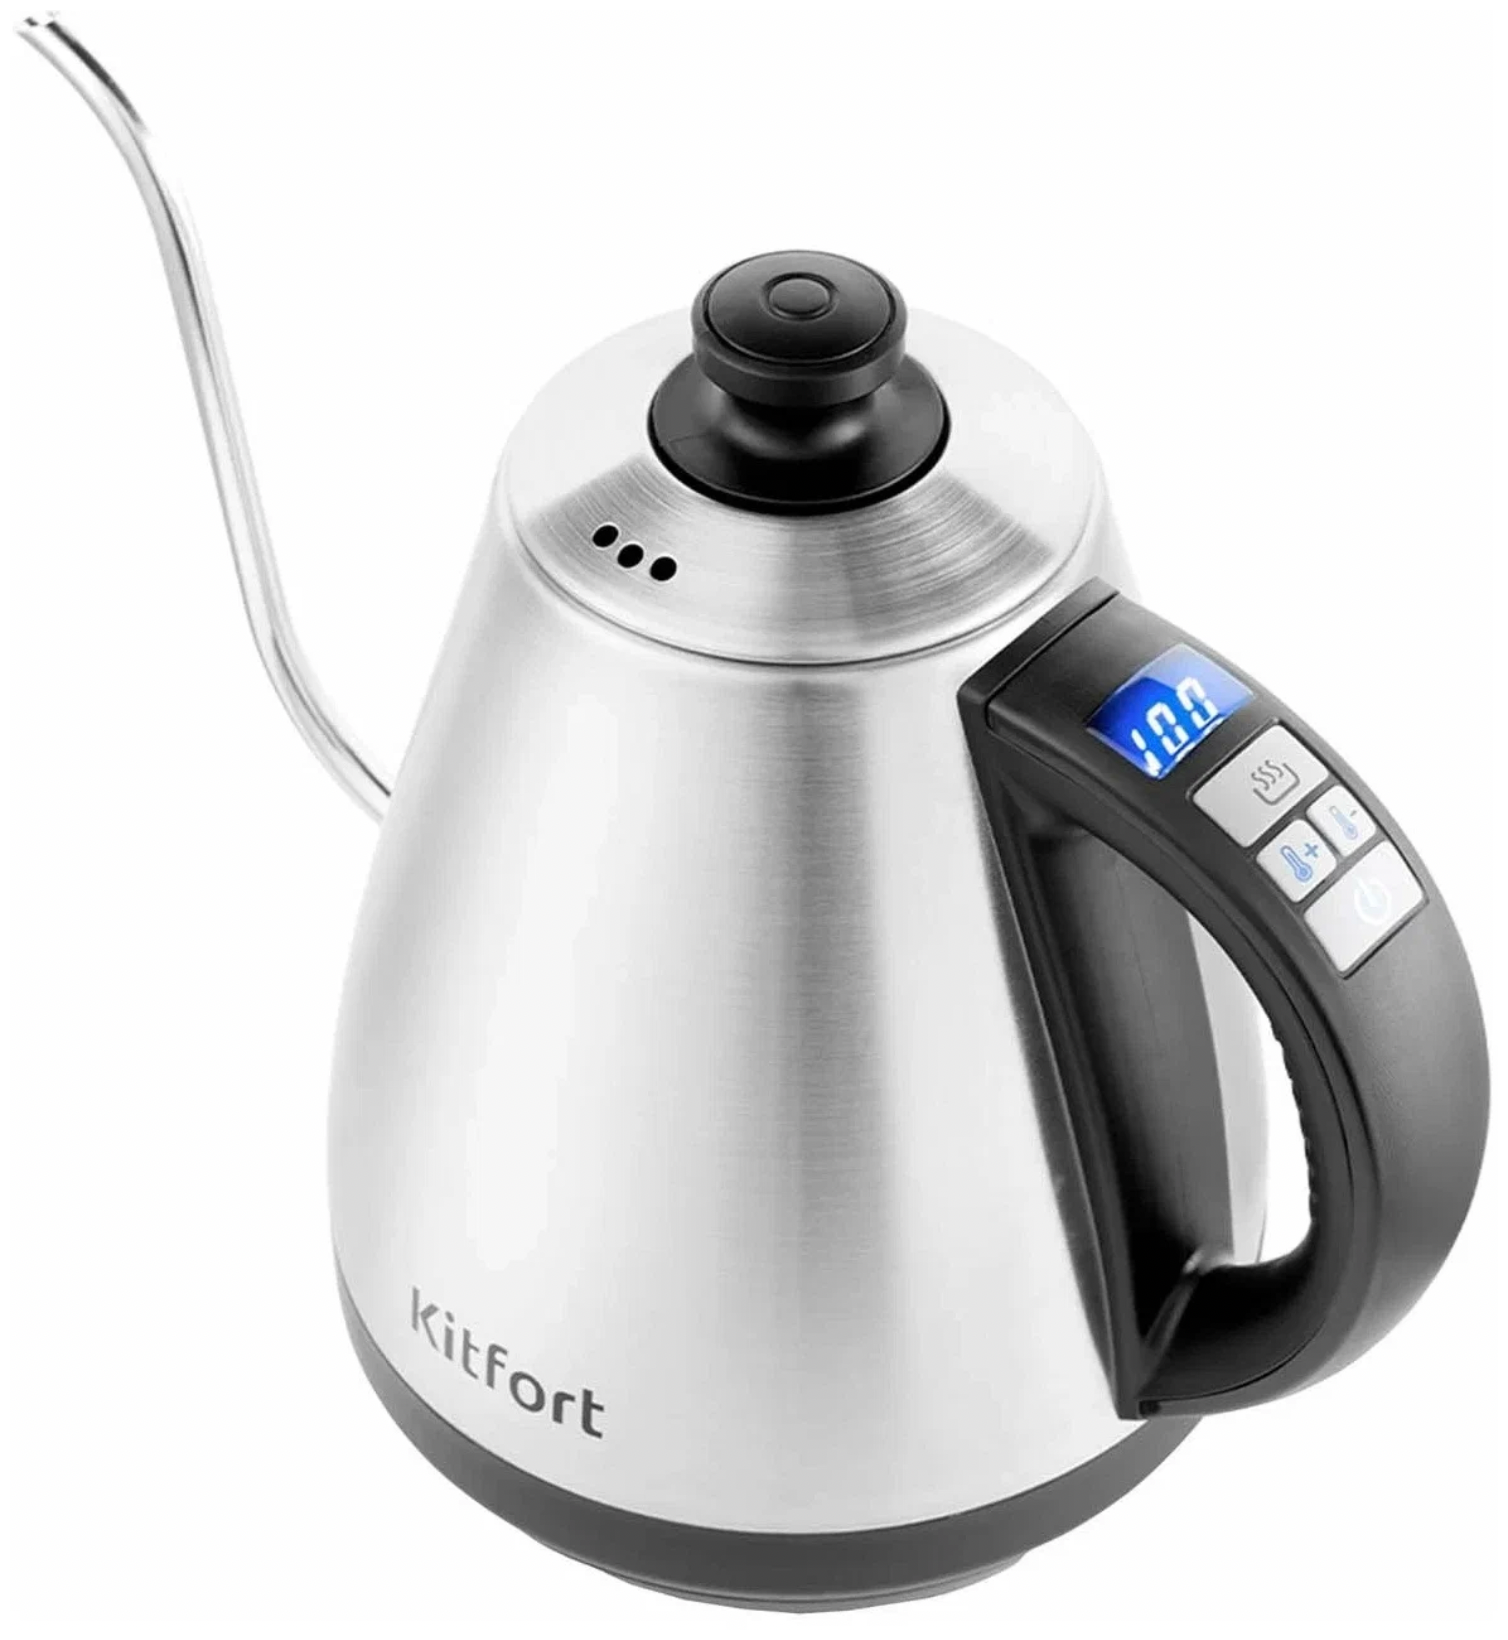 Чайник Kitfort, вращение на 360 градусов, индикатор уровня воды, индикация включения, дисплей, съемная крышка, отсек для хранения шнура